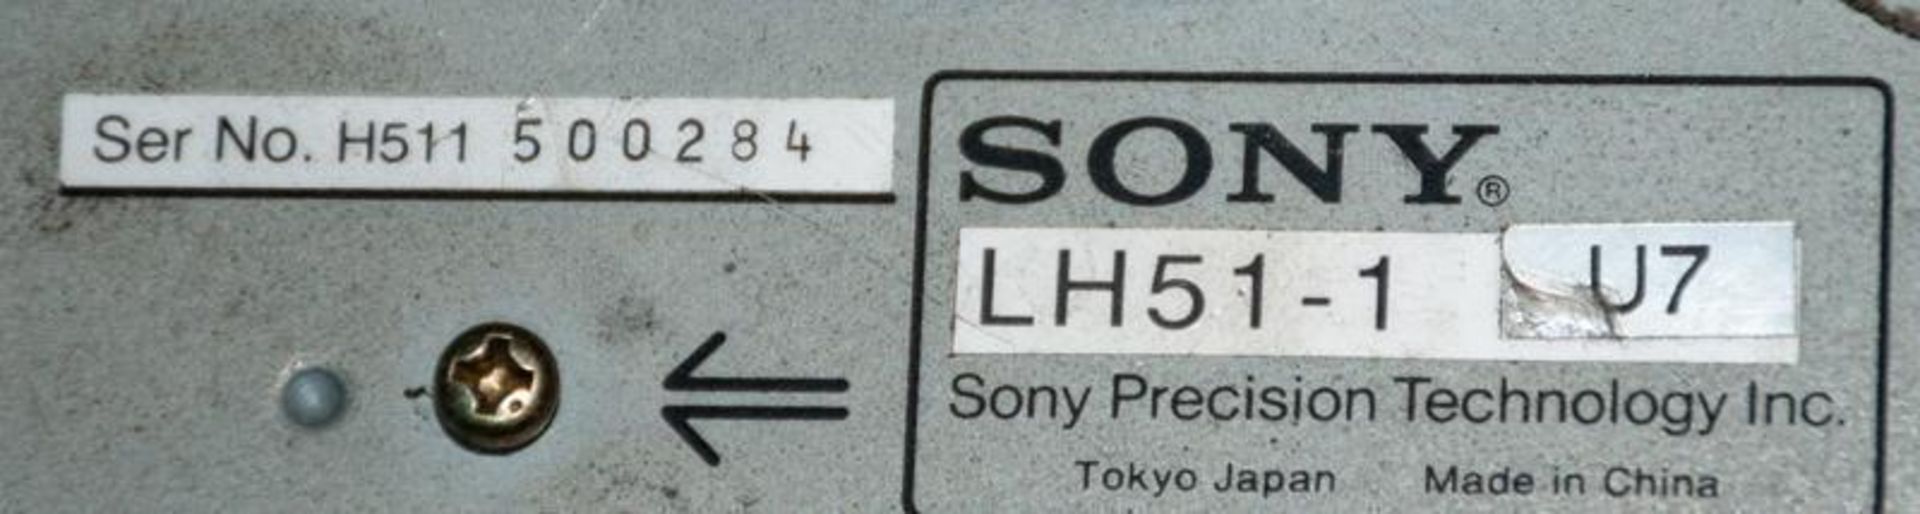 Sony LH51-1 U7 single axis digital readout, s/n H511 500284 - Image 4 of 4